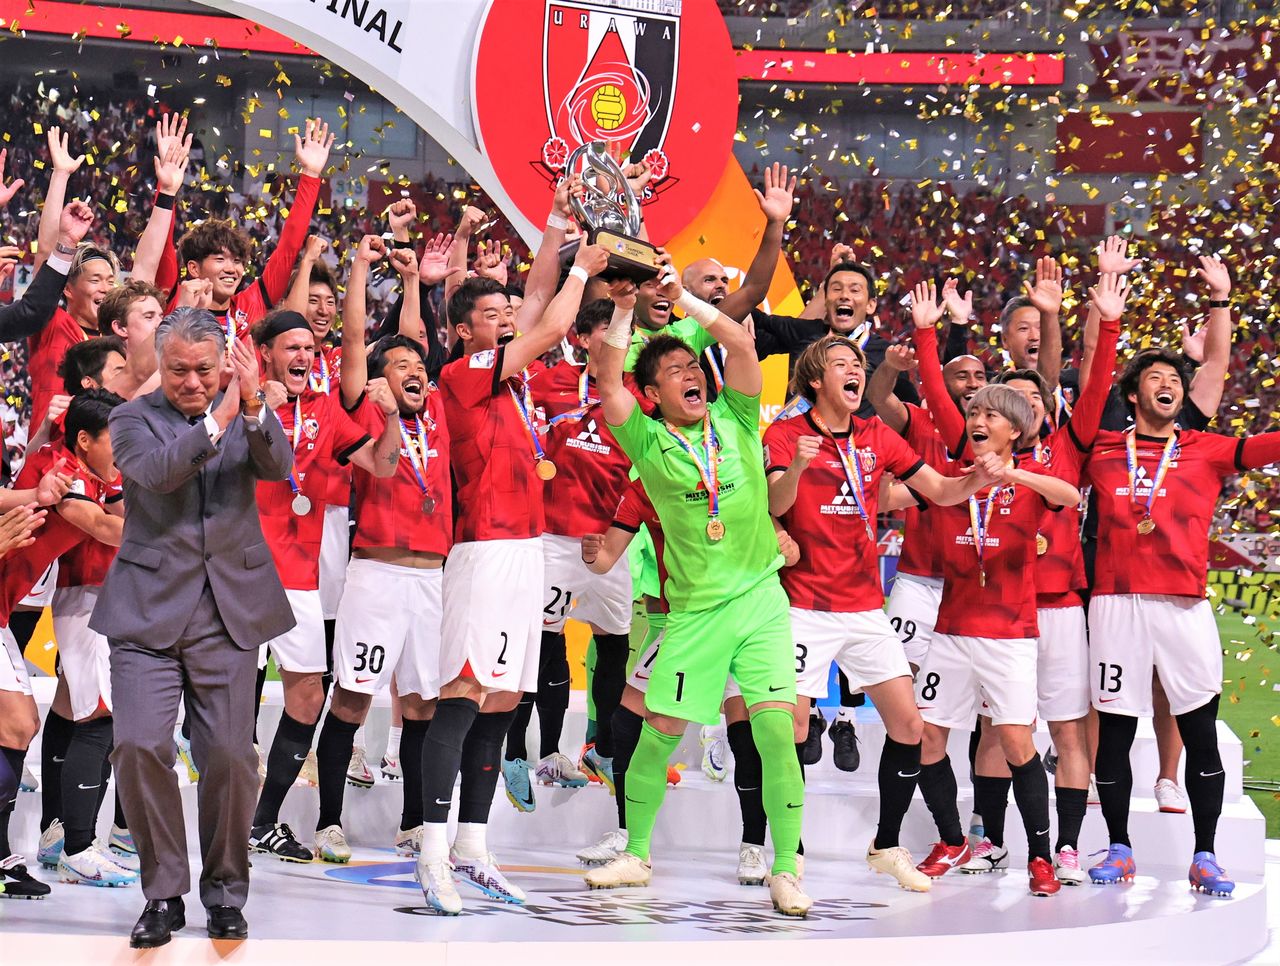 Los jugadores del Urawa Red Diamonds celebran su tercer título de la ACL tras derrotar al Al-Hilal de Arabia Saudí. Los dos trofeos anteriores los ganaron en 2007 y 2017. Fotografía tomada el 6 de mayo de 2023 en el Saitama Stadium. (Jiji Press)